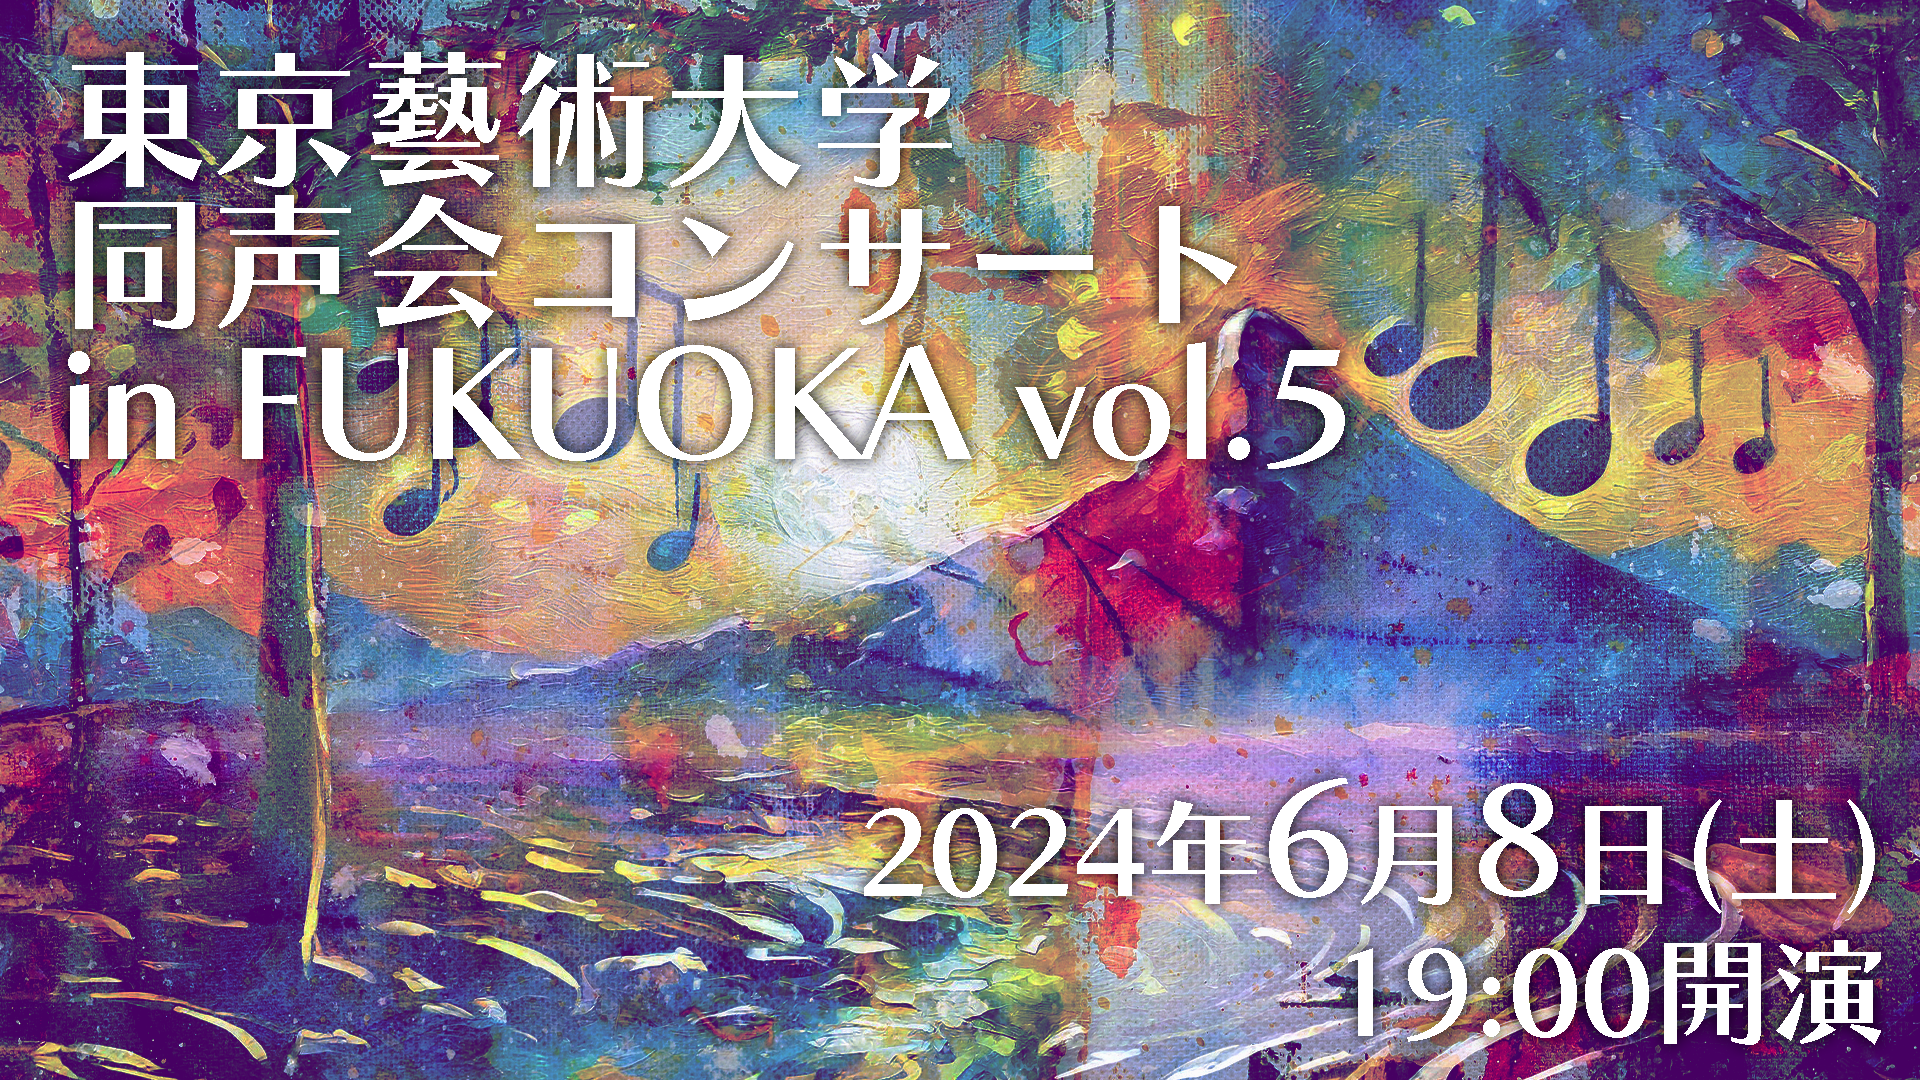 福岡で開催される東京芸術大学同声会の音楽コンサートのサムネイル画像